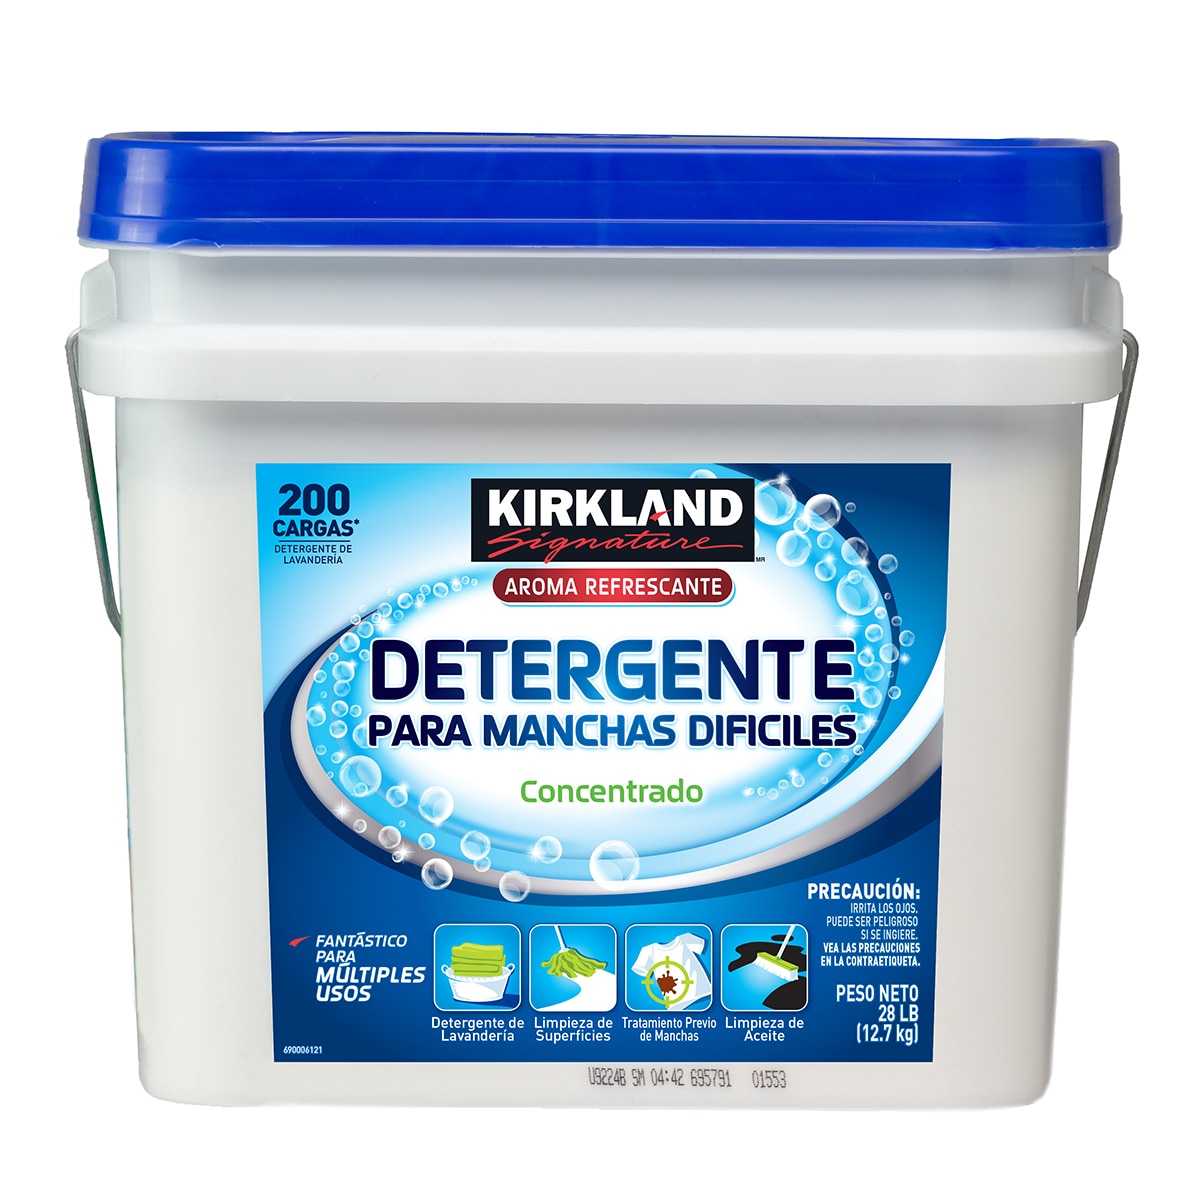  Kirkland Signature Detergente Multiusos 12.7 kg